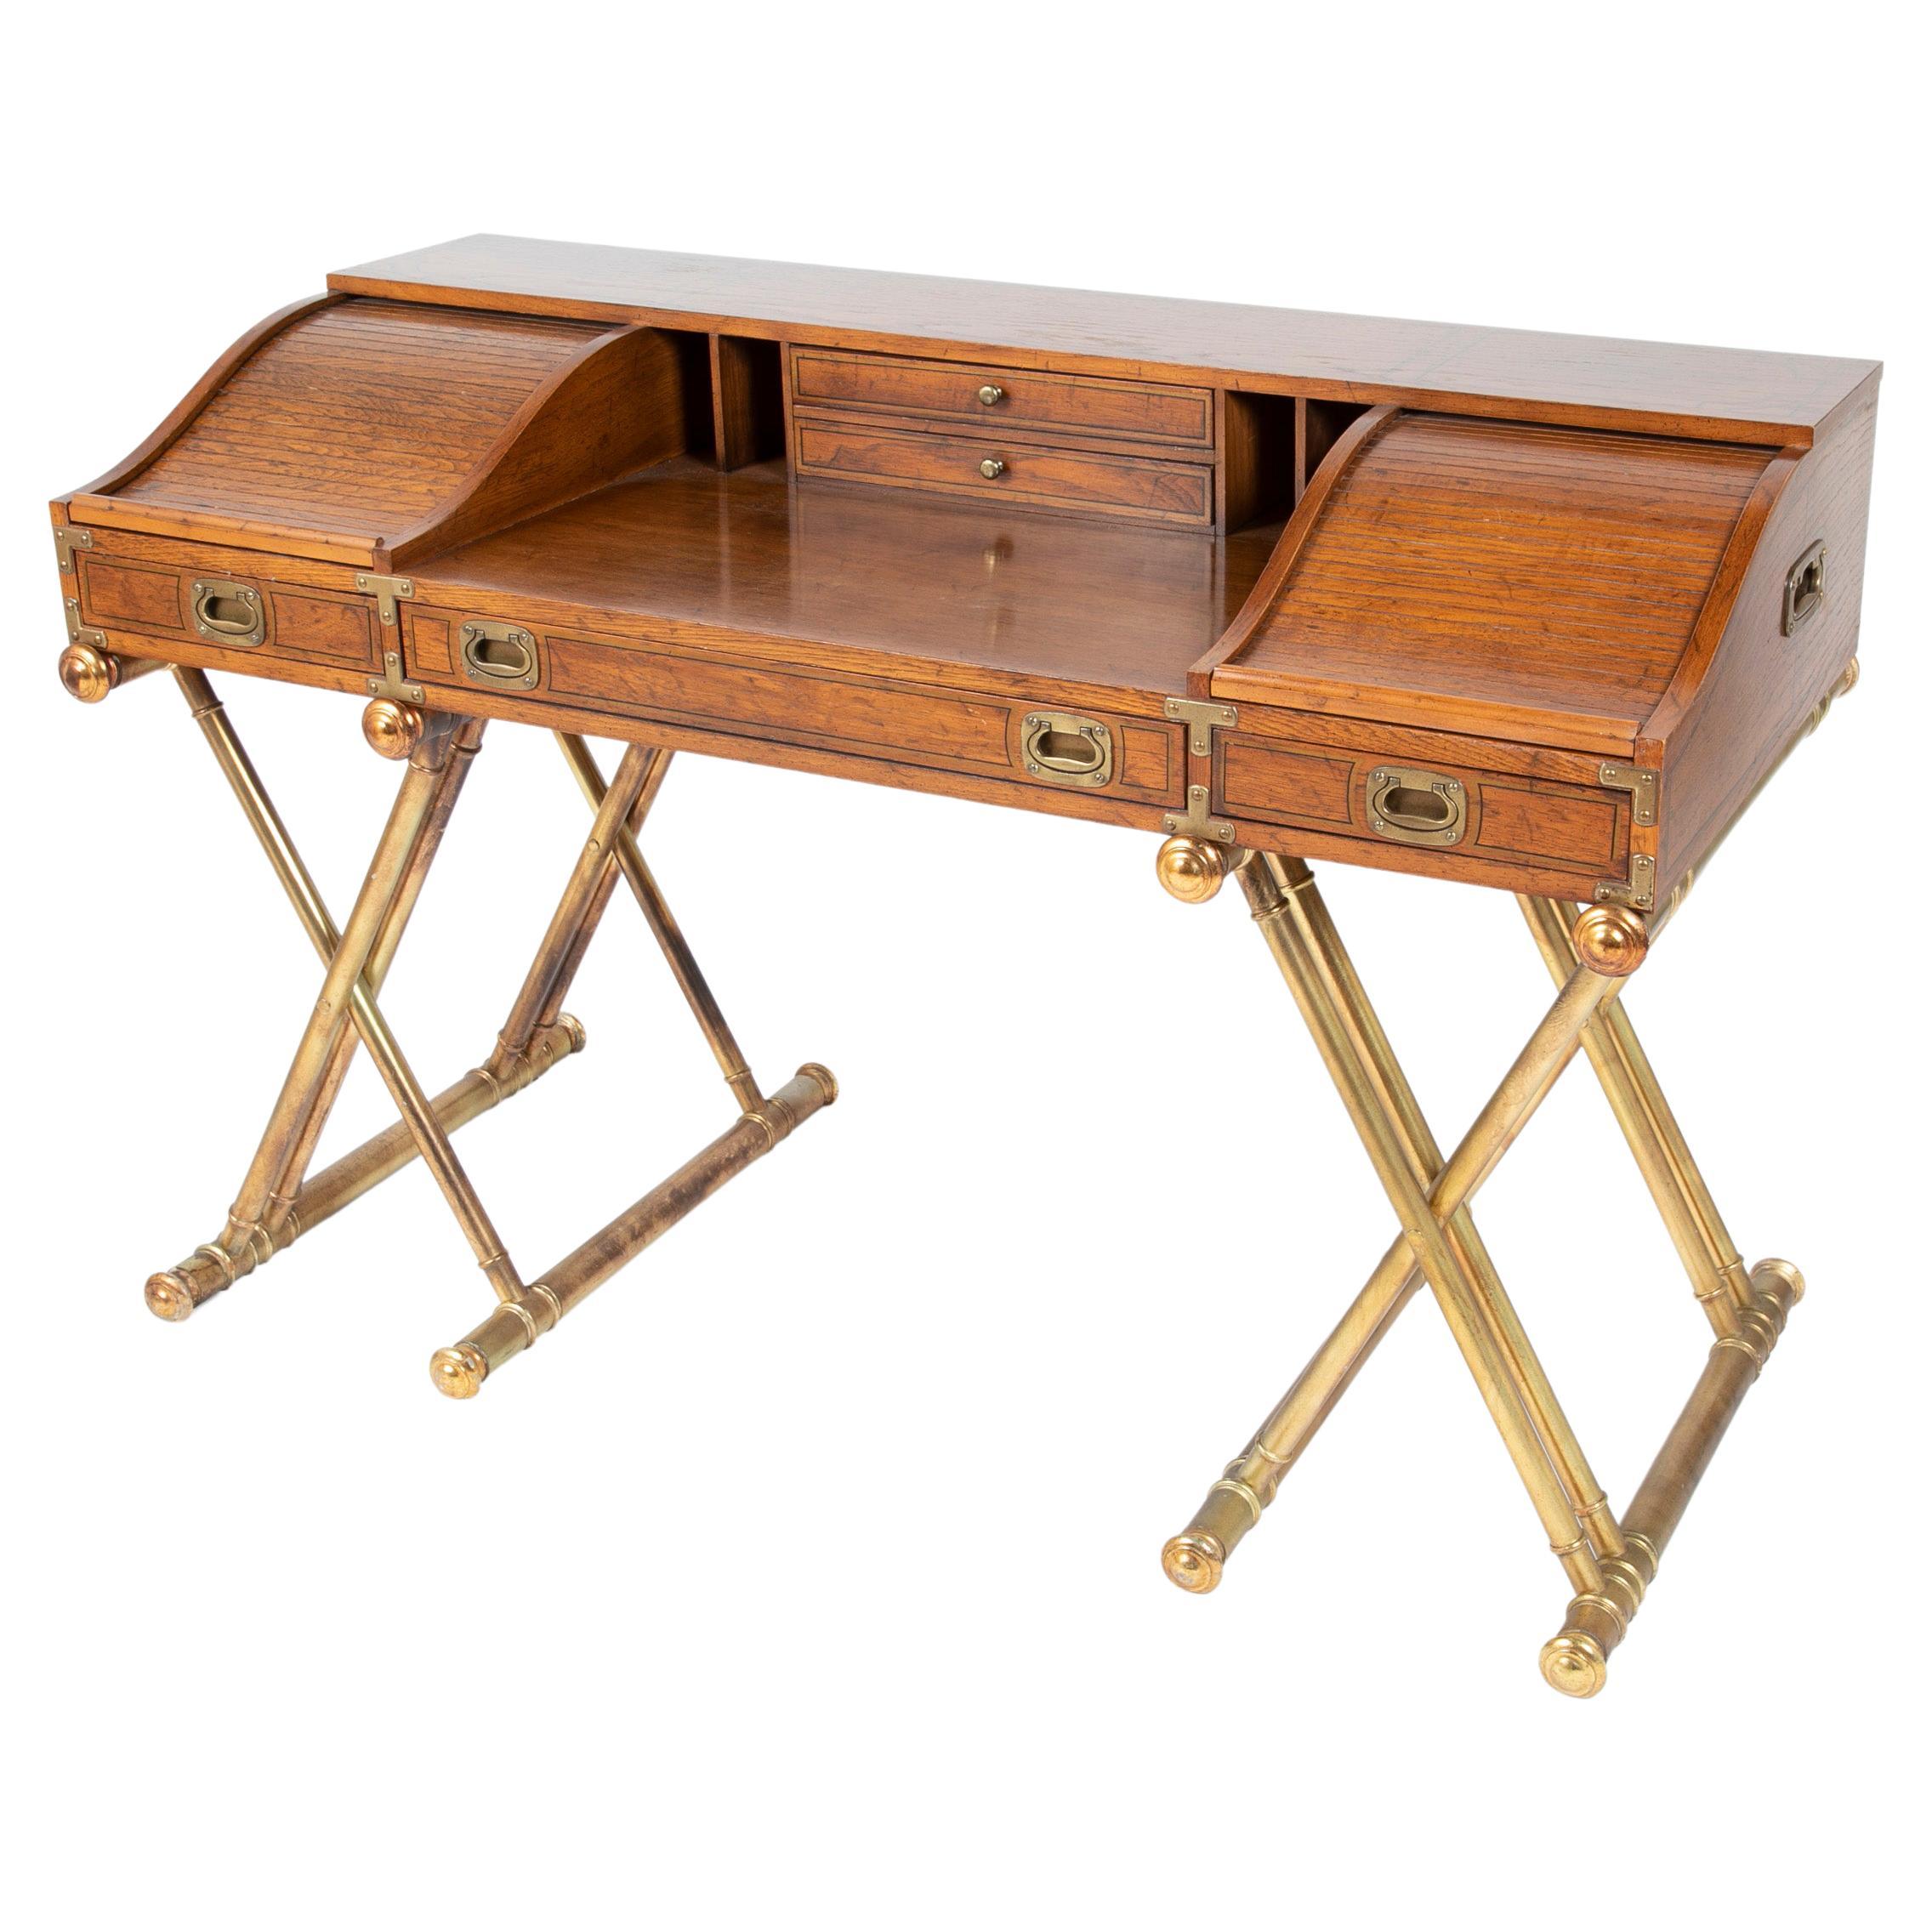 Vintage Drexel Campaigner Desk and Chair with Gilt X-Base Legs, Roll Top (Bureau et chaise de campagne avec pieds en X dorés)